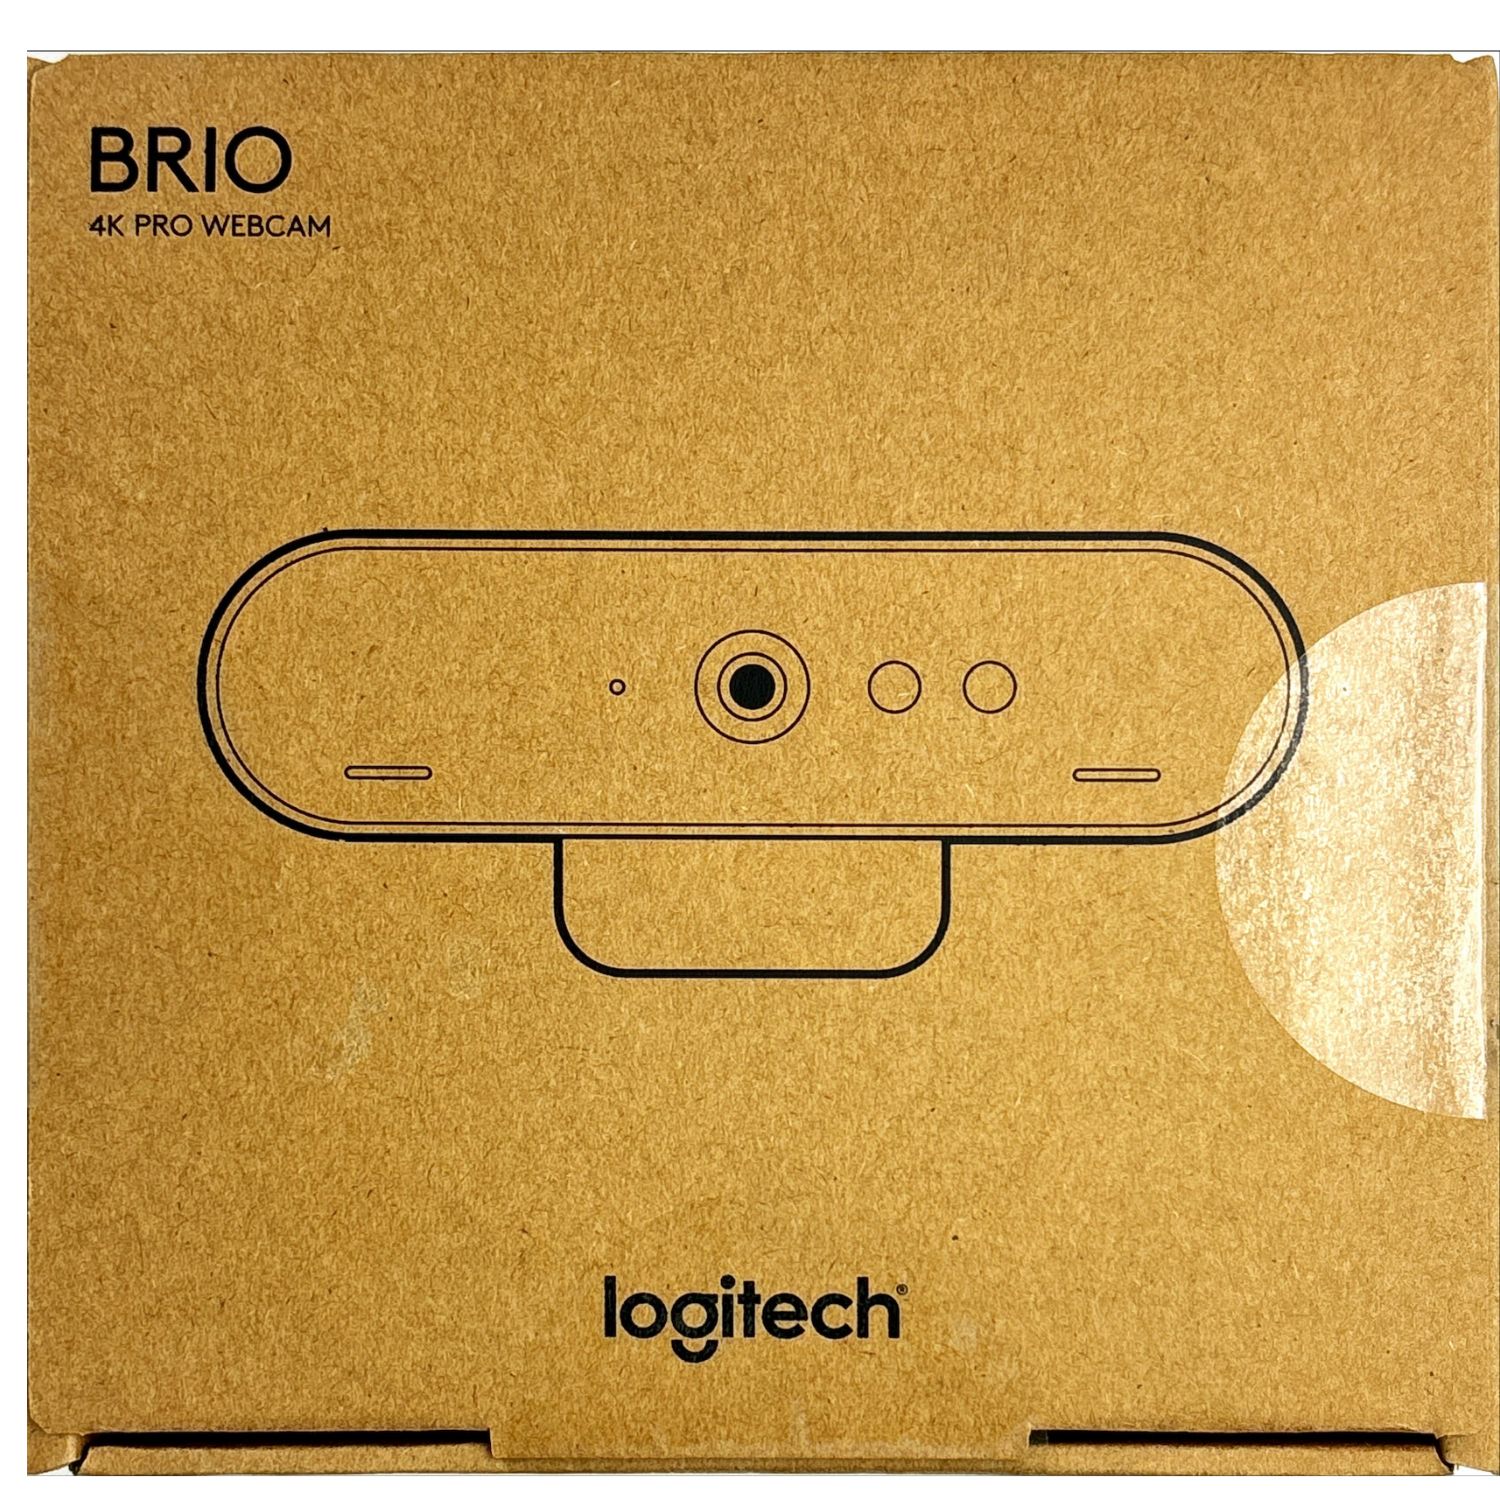 [9現貨] Logitech 高清網路攝像頭 BRIO – 4K Ultra HD Webcam – 5x Digital Zoom